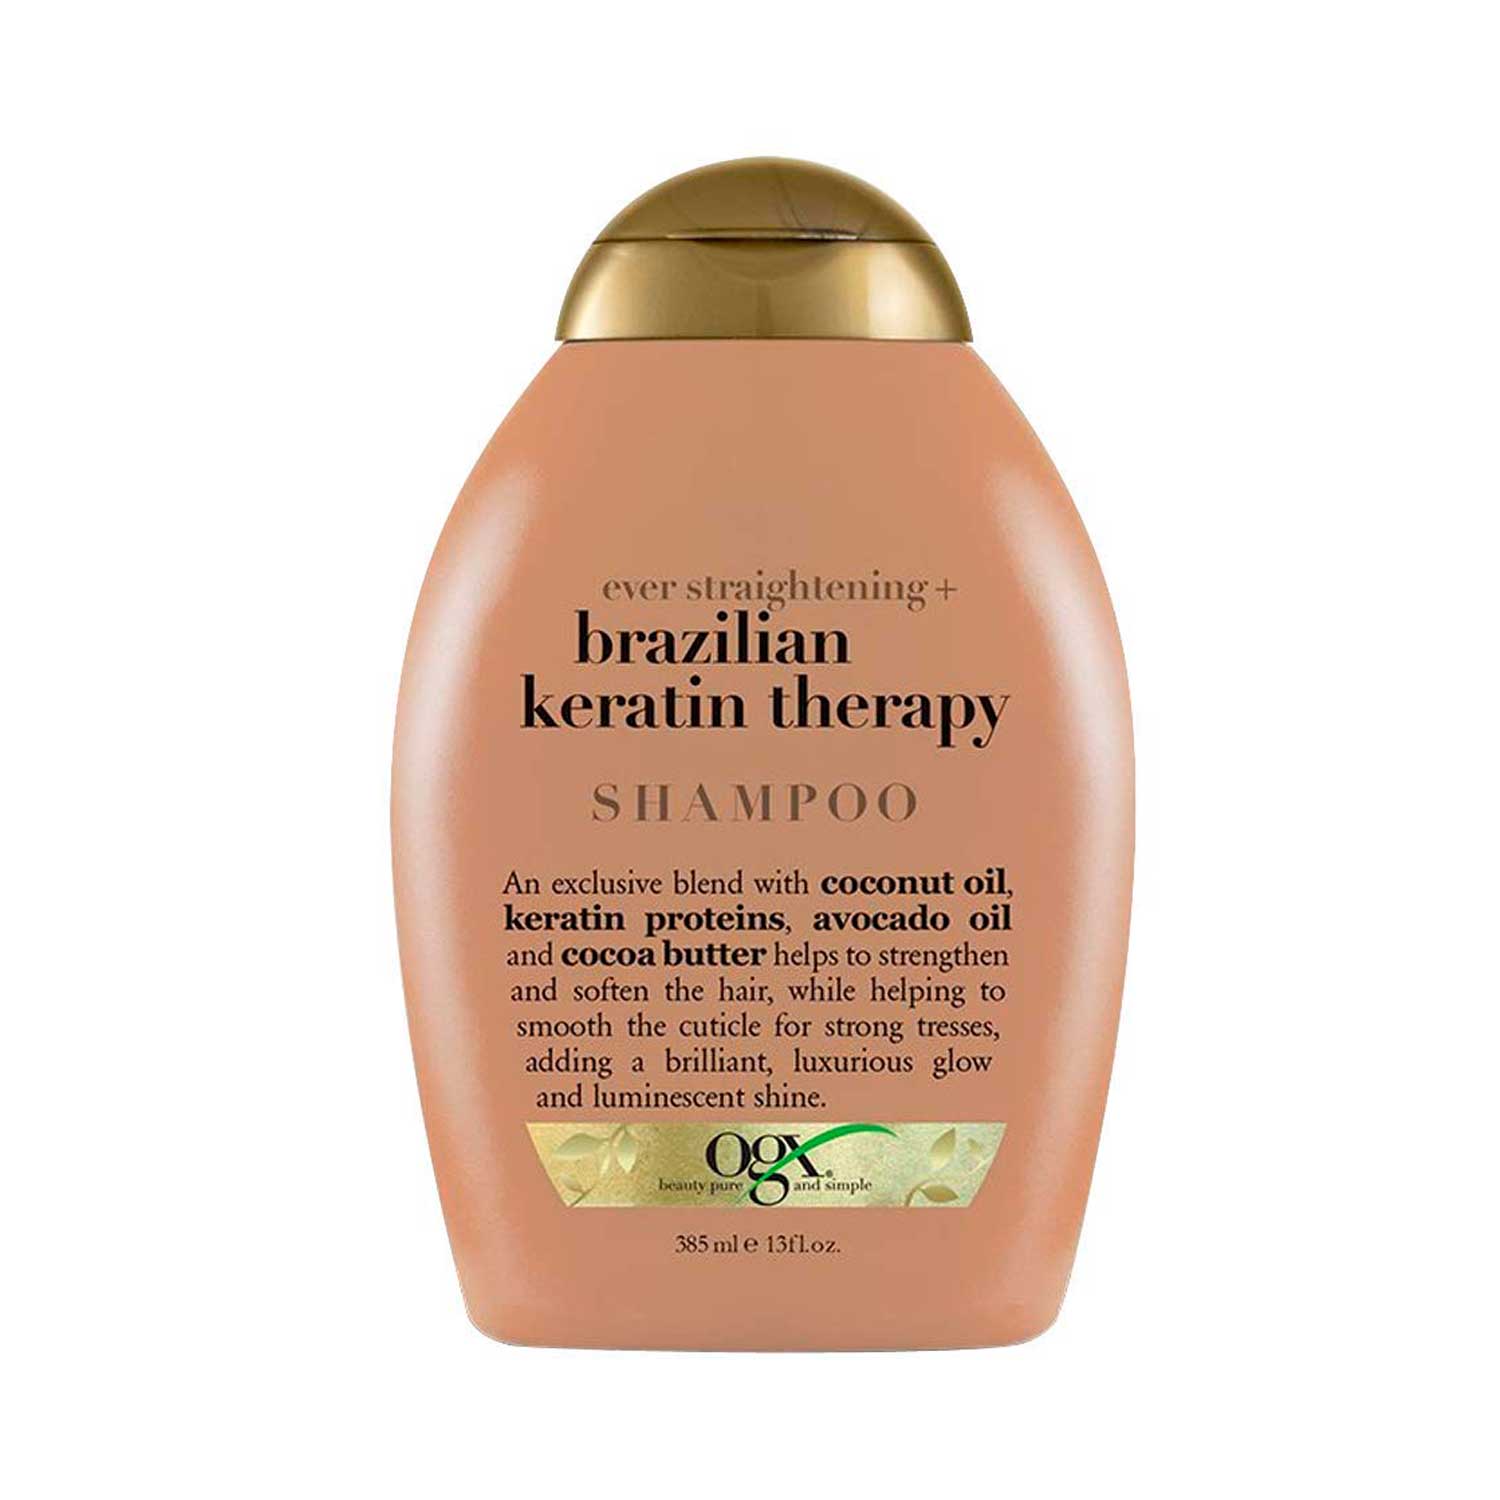 Shampoo Brazilian Keratin Therapy OGX 385 ml